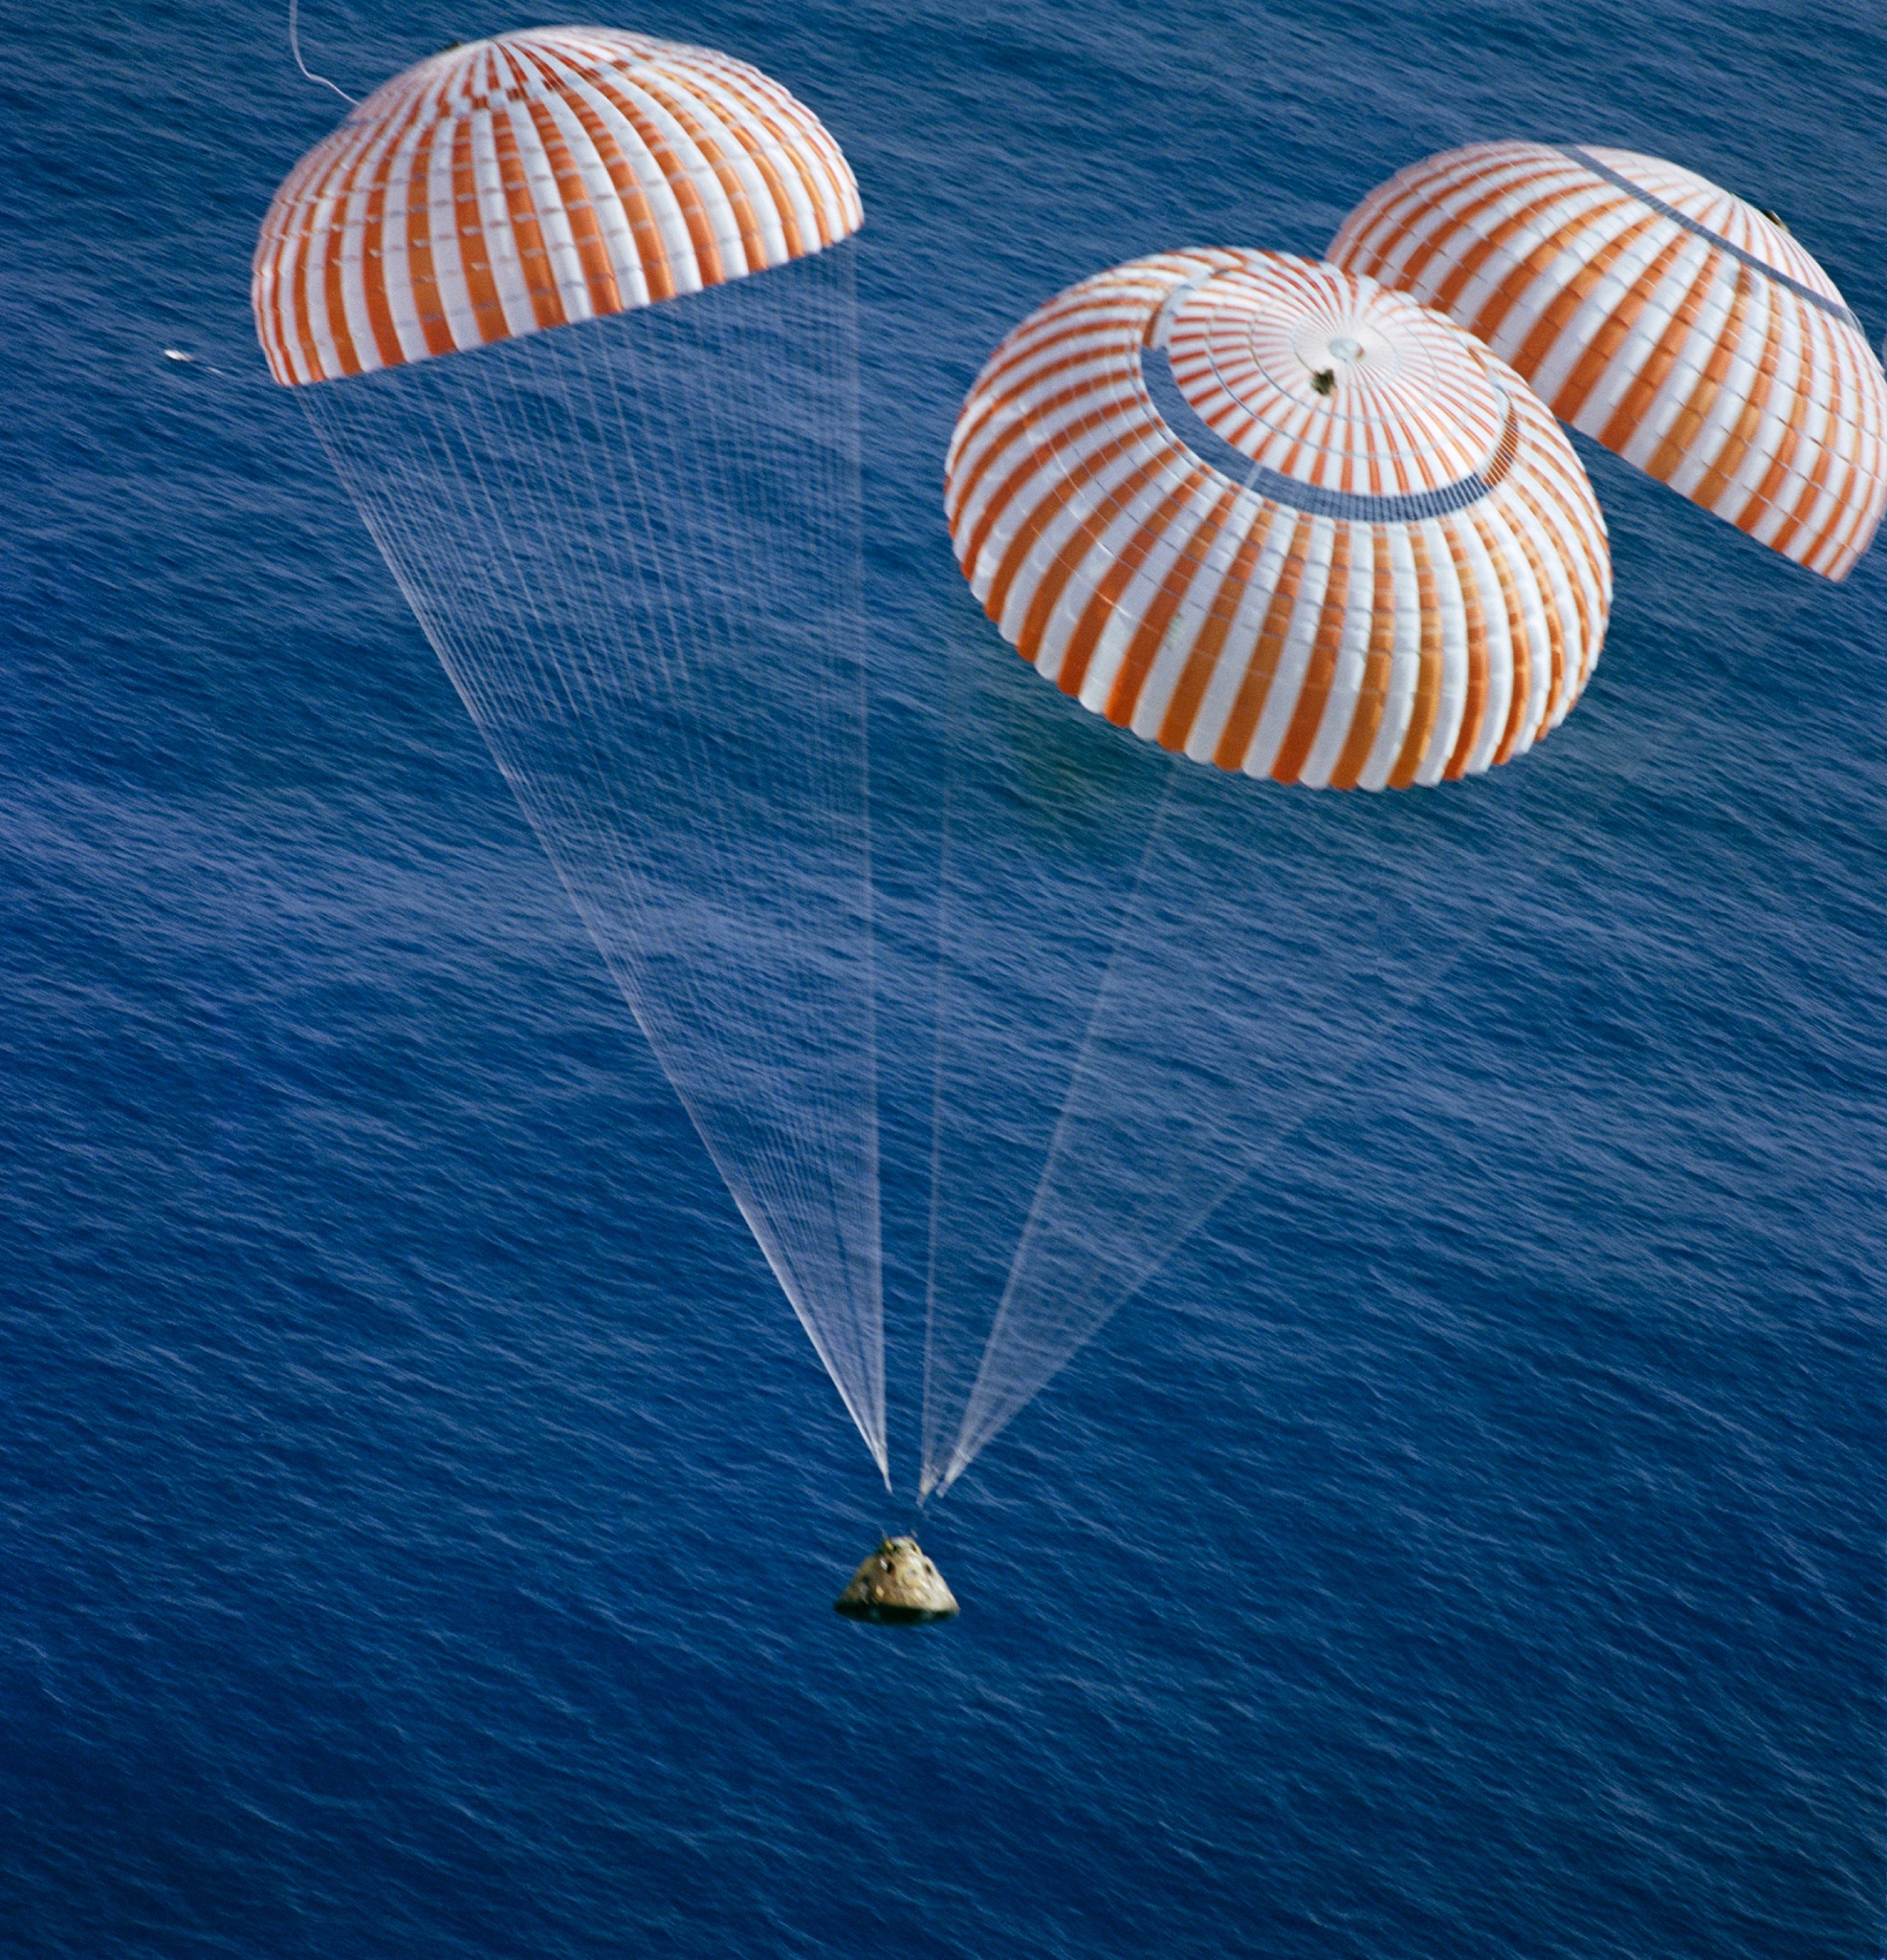 The Apollo 17 command module America (CM-112) descends to the South Pacific under three parachutes. (NASA)